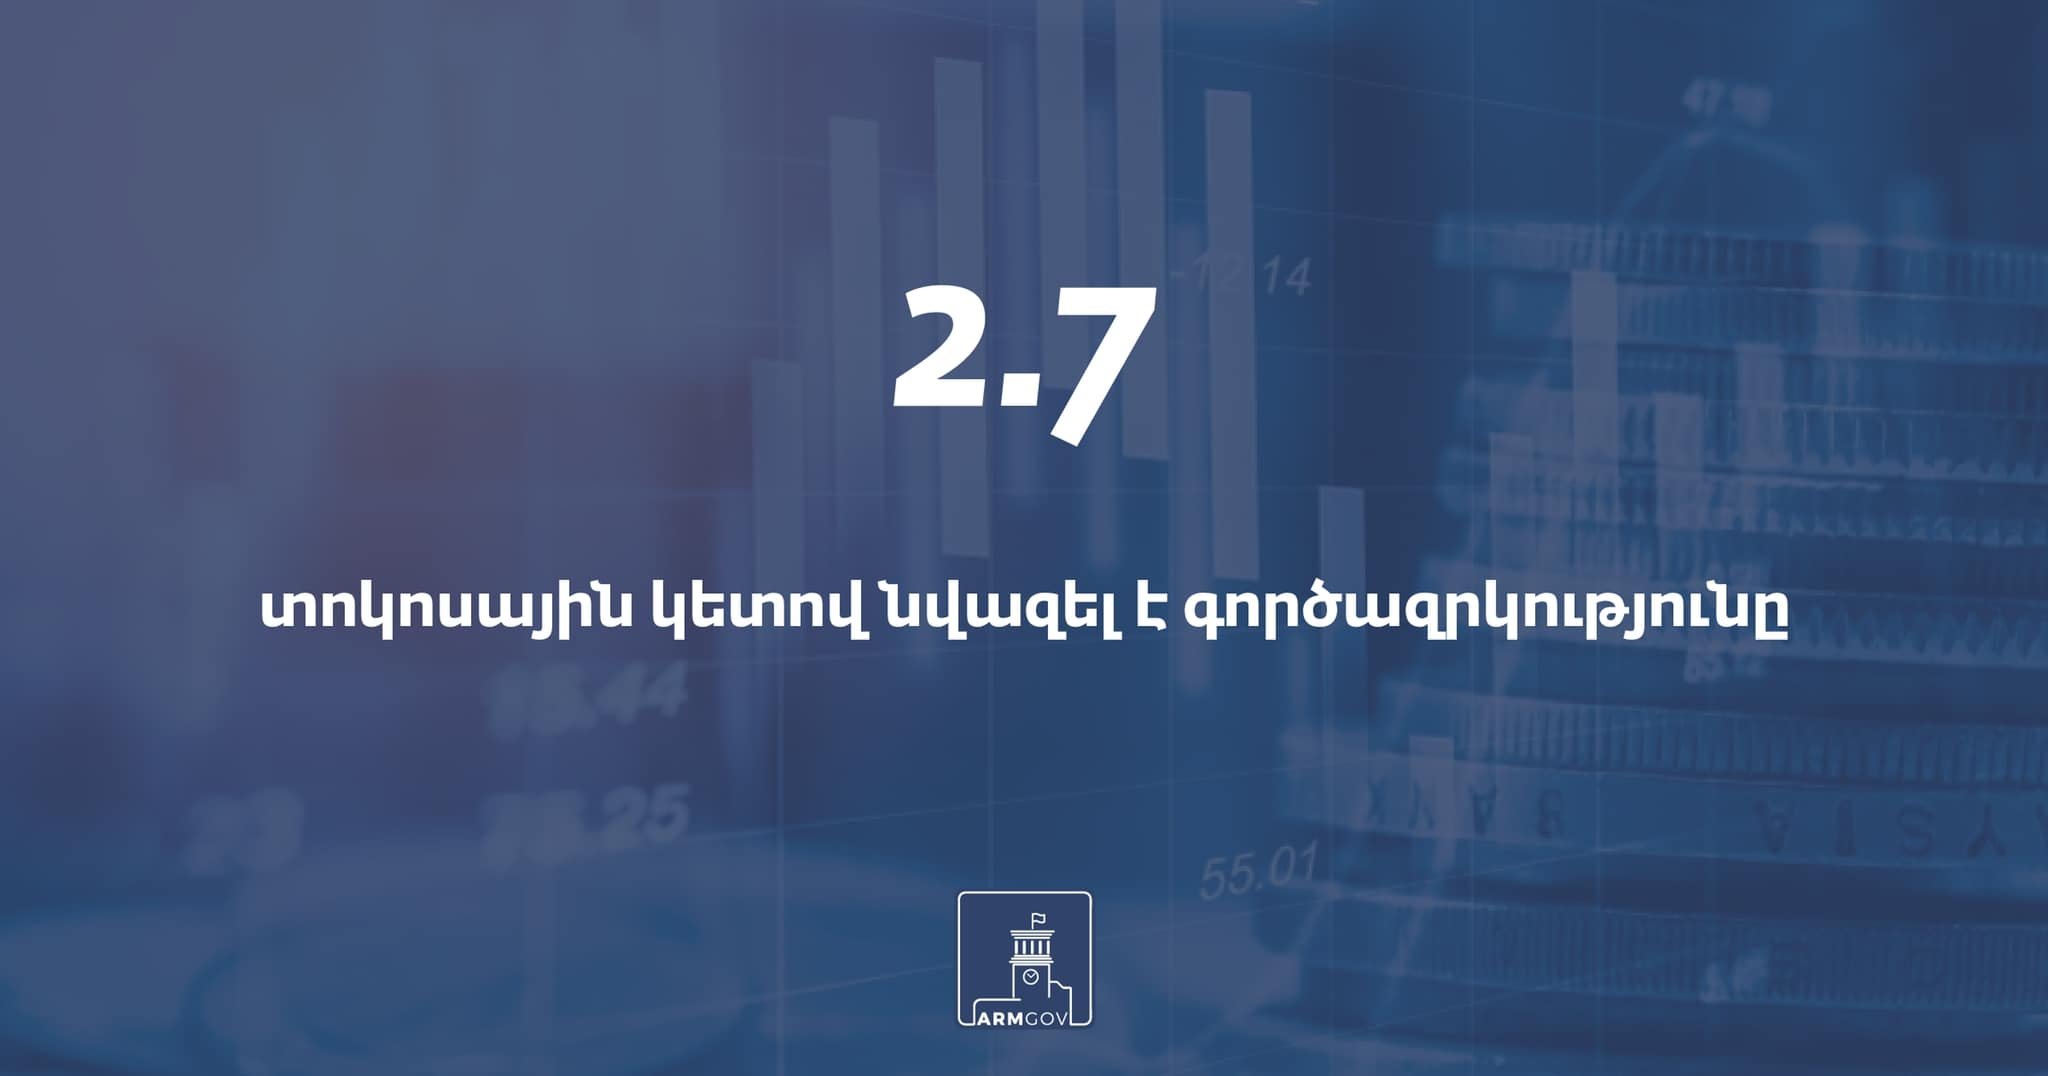 Հայաստանում գործազրկության մակարդակը 2021թ-ի 1-ին եռամսյակում 2020թ-ի նույն ժամանակահատվածի համեմատ նվազել է 2.7 տոկոսային կետով